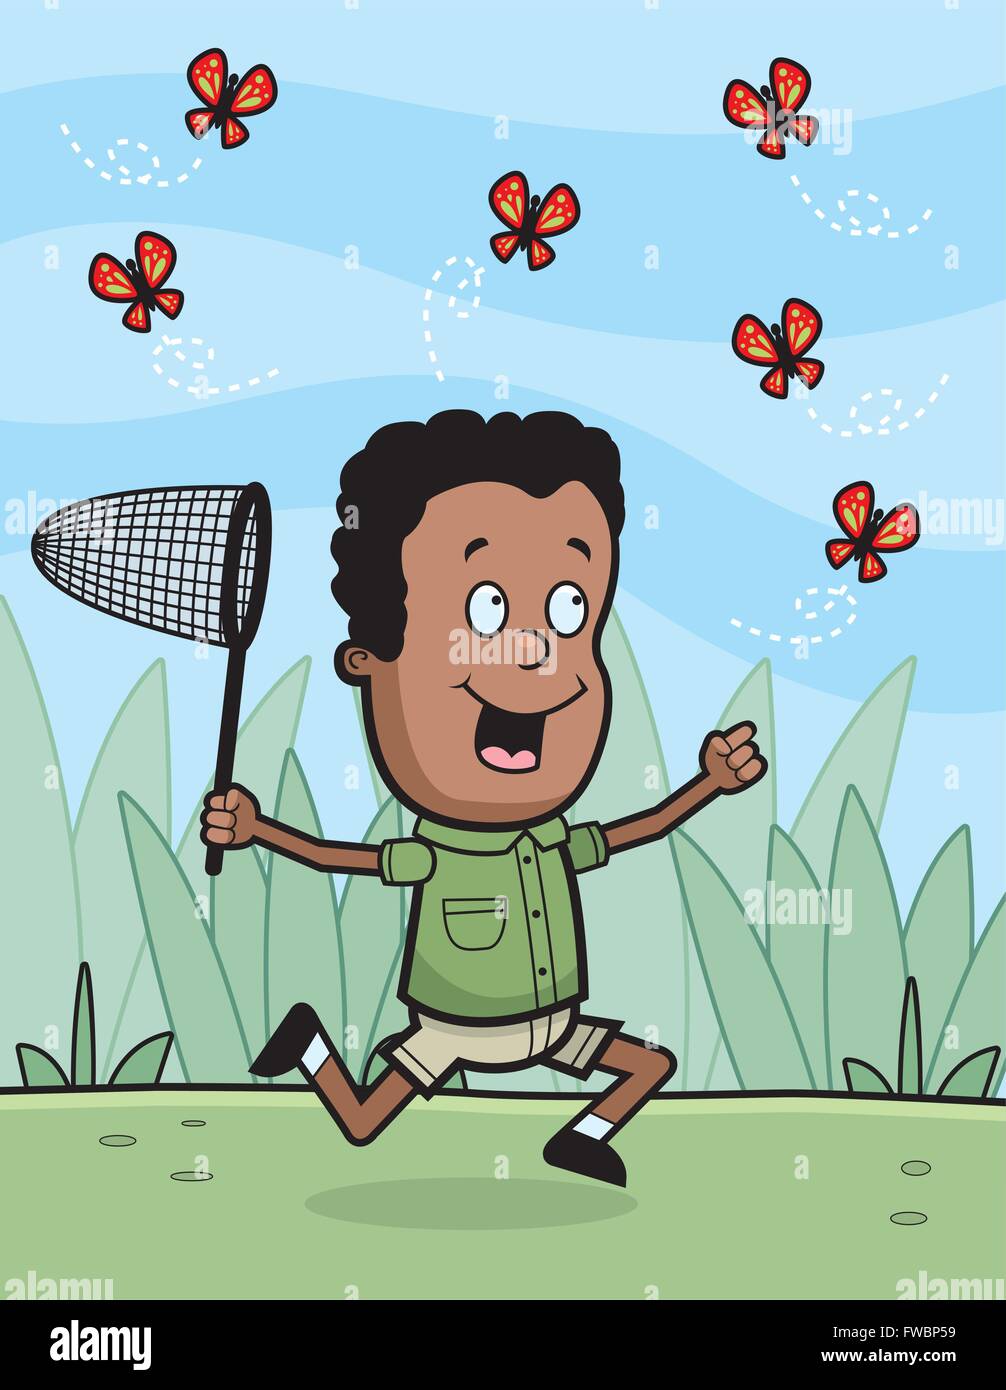 Un felice cartoon boy a caccia di farfalle. Illustrazione Vettoriale